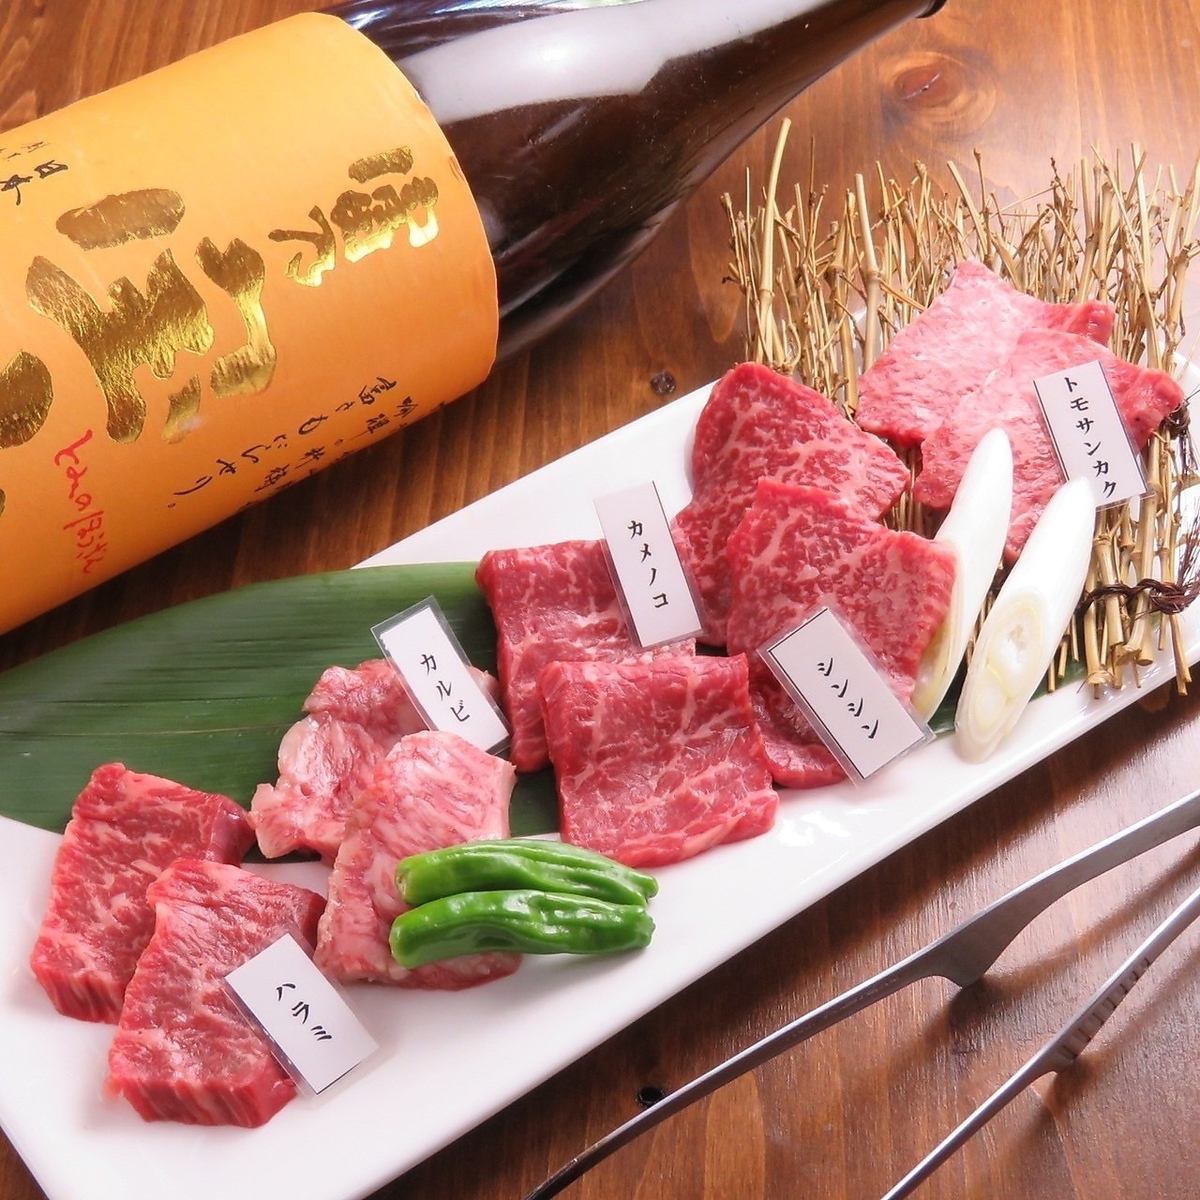 [Community-based!] NEWPOEN as a kitchen for Yakiniku Takuzo! Yakiniku made with Kuroge Wagyu beef is exquisite!